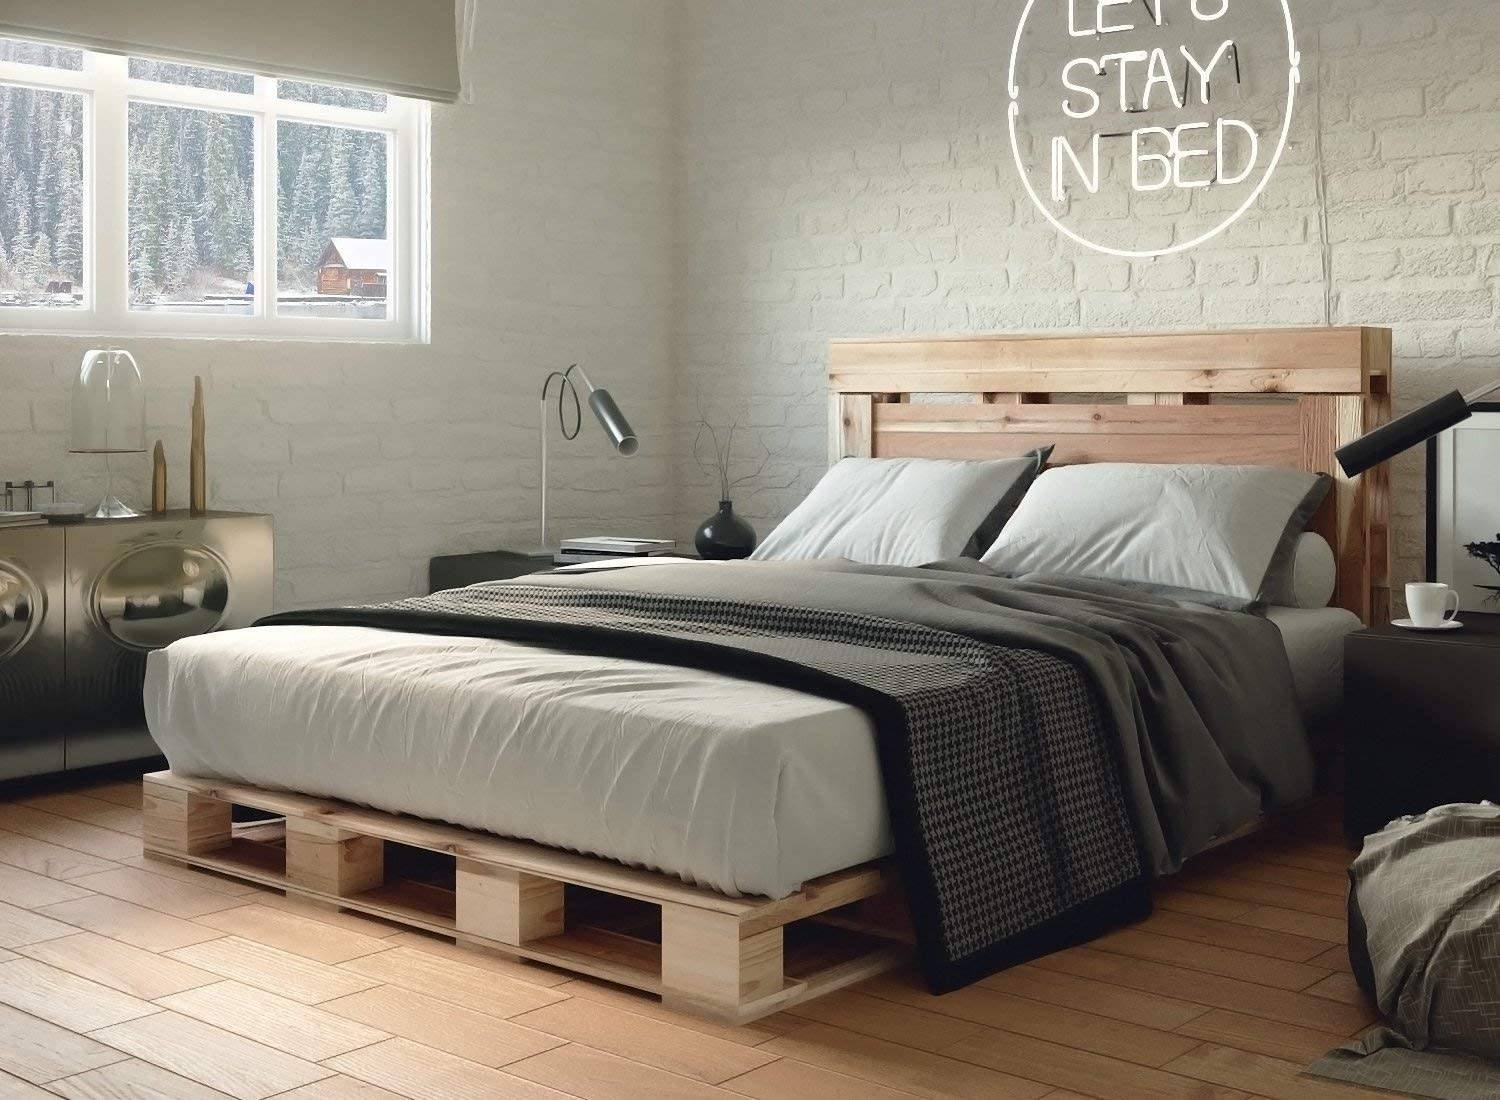 Màu xám mờ và tường gạch tự nhiên được tạo điểm nhấn bởi vật liệu gỗ của khung giường thùng và sàn nhẹ